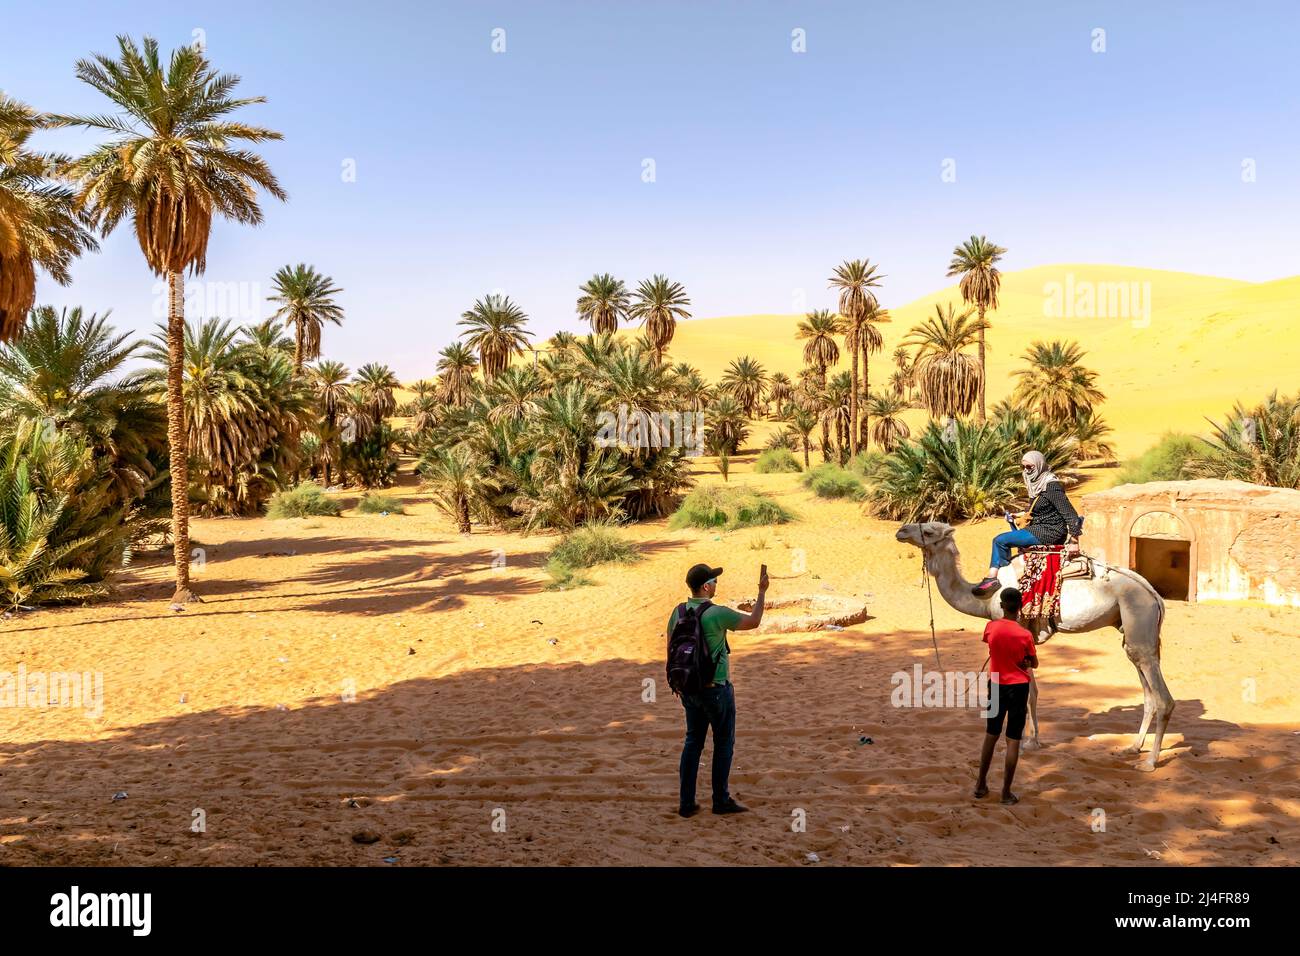 Touristes sur le désert du Sahara, une femme avec un foulard sur un dromadaire chameau et un homme photographiant avec un smartphone. Tuareg enfant guide local tenue. Banque D'Images